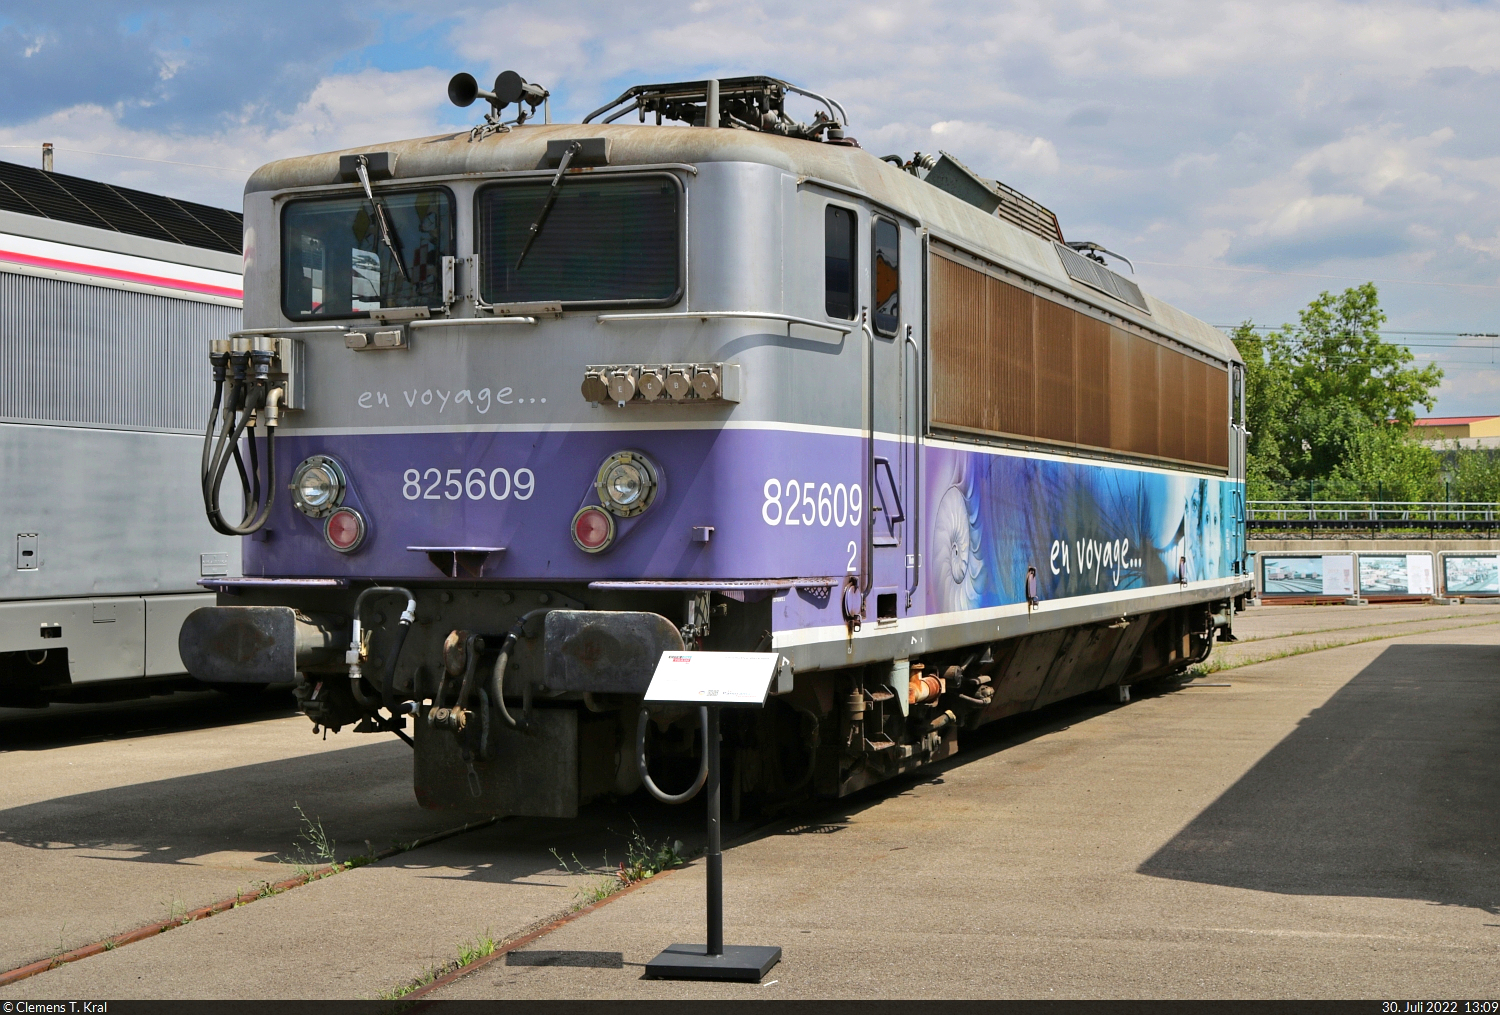 BB 825609 (Baujahr 1974) ist im Außenbereich des Cité du Train (Eisenbahnmuseum) Mulhouse (F) ausgestellt.

🧰 Cité du Train - Patrimoine SNCF
🕓 30.7.2022 | 13:09 Uhr